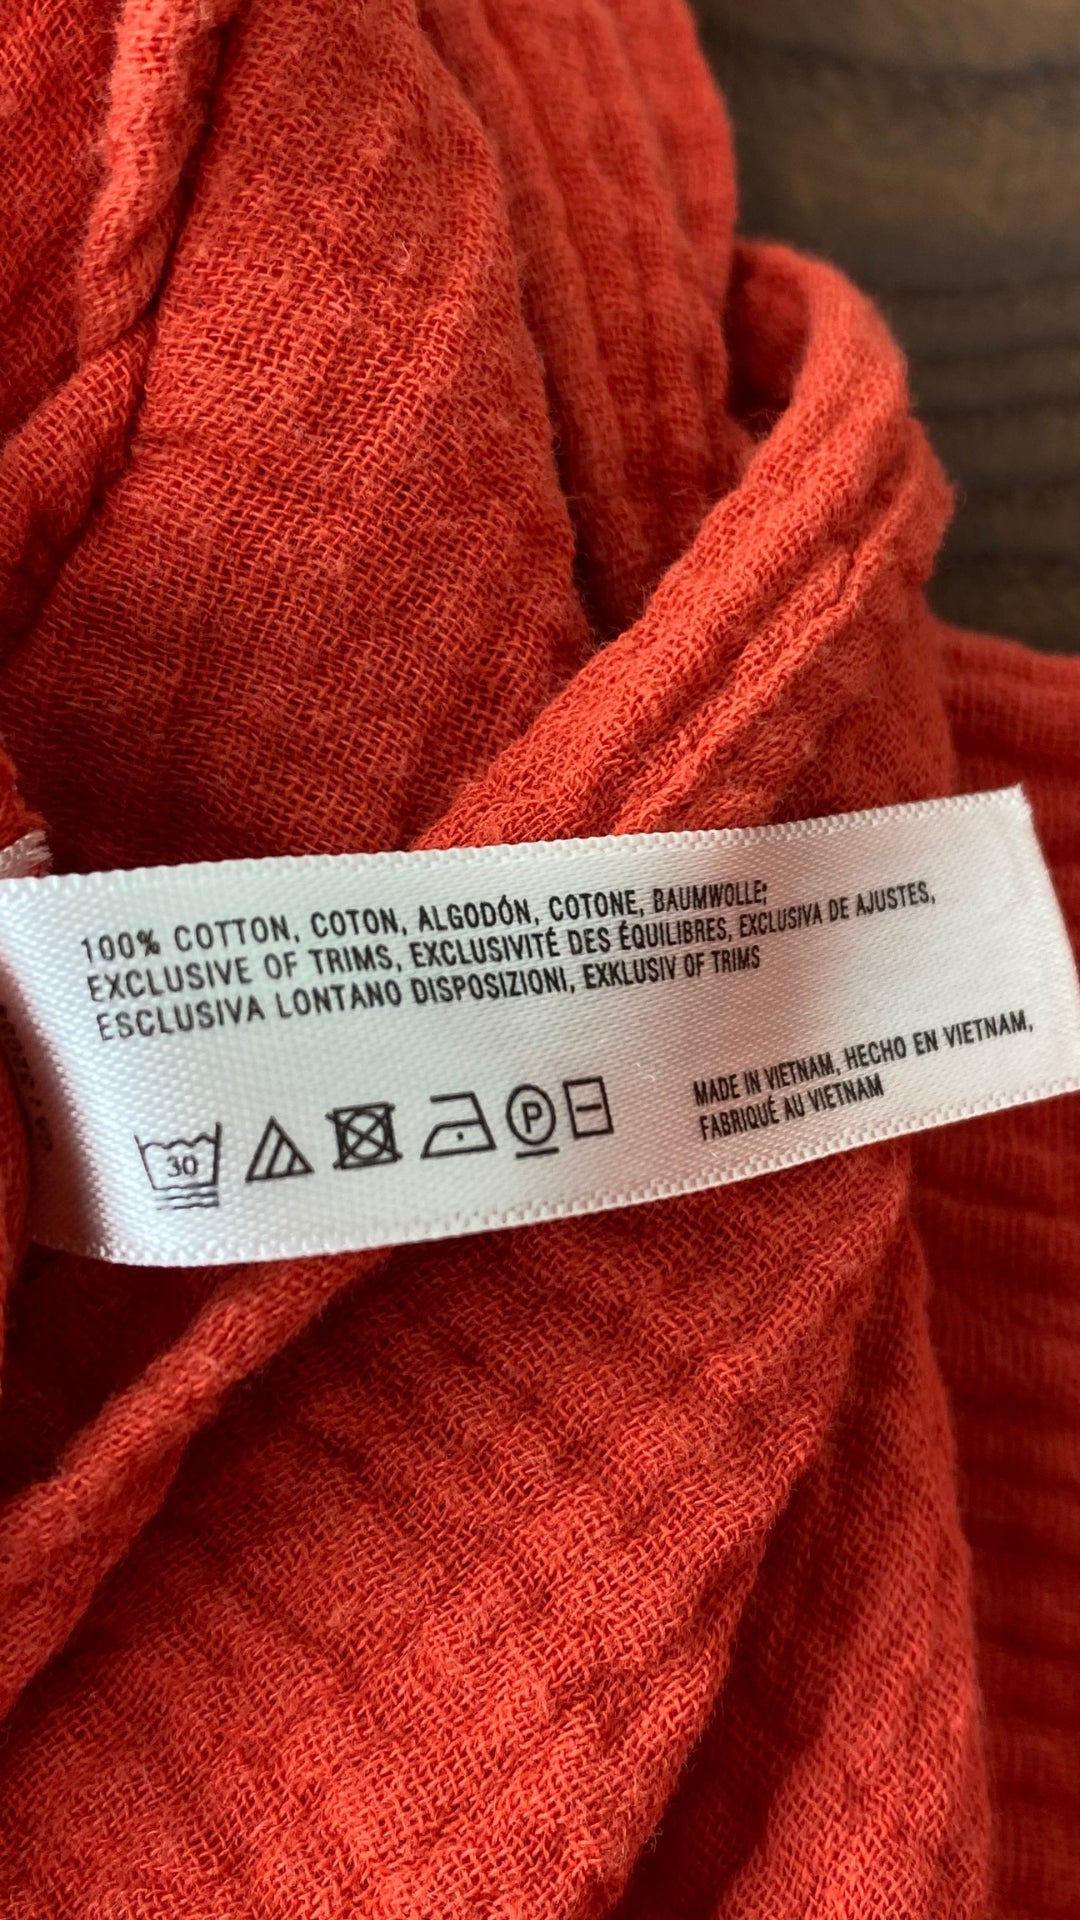 Combinaison longue gaufrée orangée en coton de Anthropologie, taille small (ou extra-small). Vue de l'étiquette de composition et entretien.